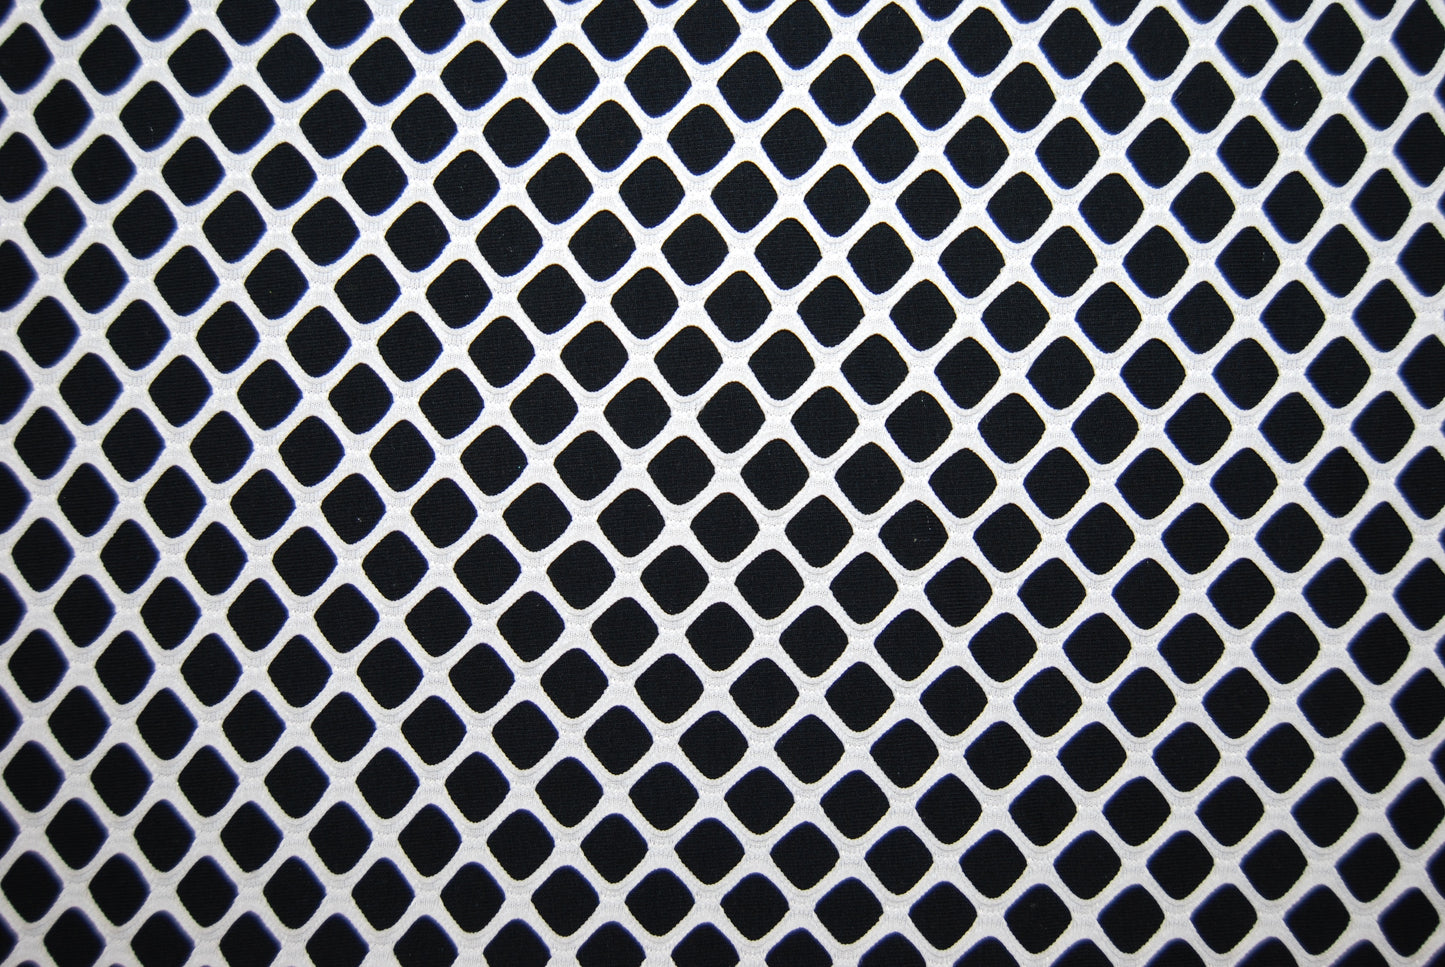 Fishnet mesh stor